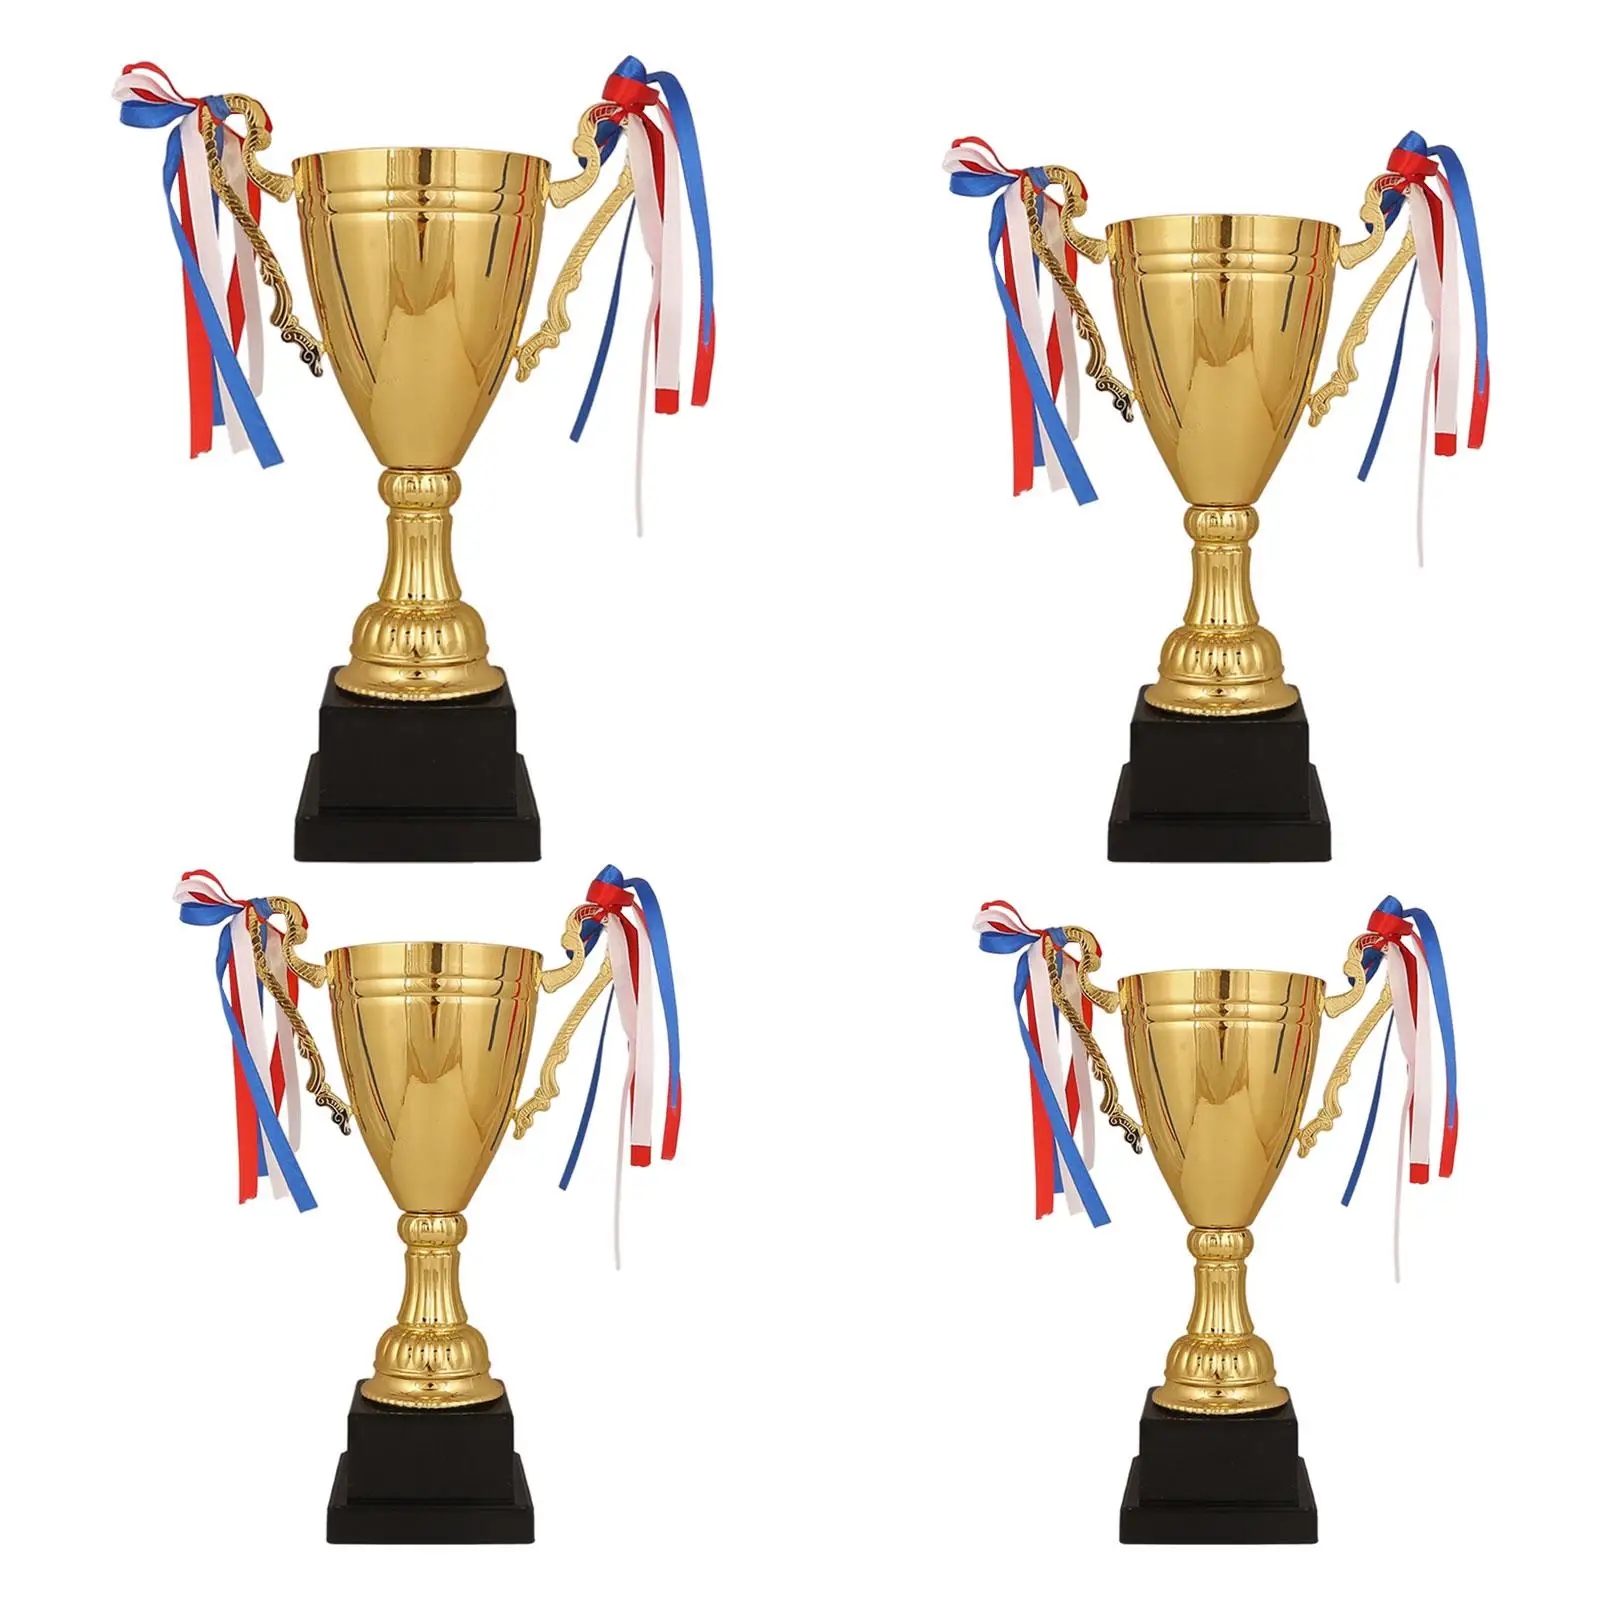 

Металлическая Золотая награда «золотой трофей» для турниров, подарочных торжеств, спортивных чемпионатов, Детского Футбола